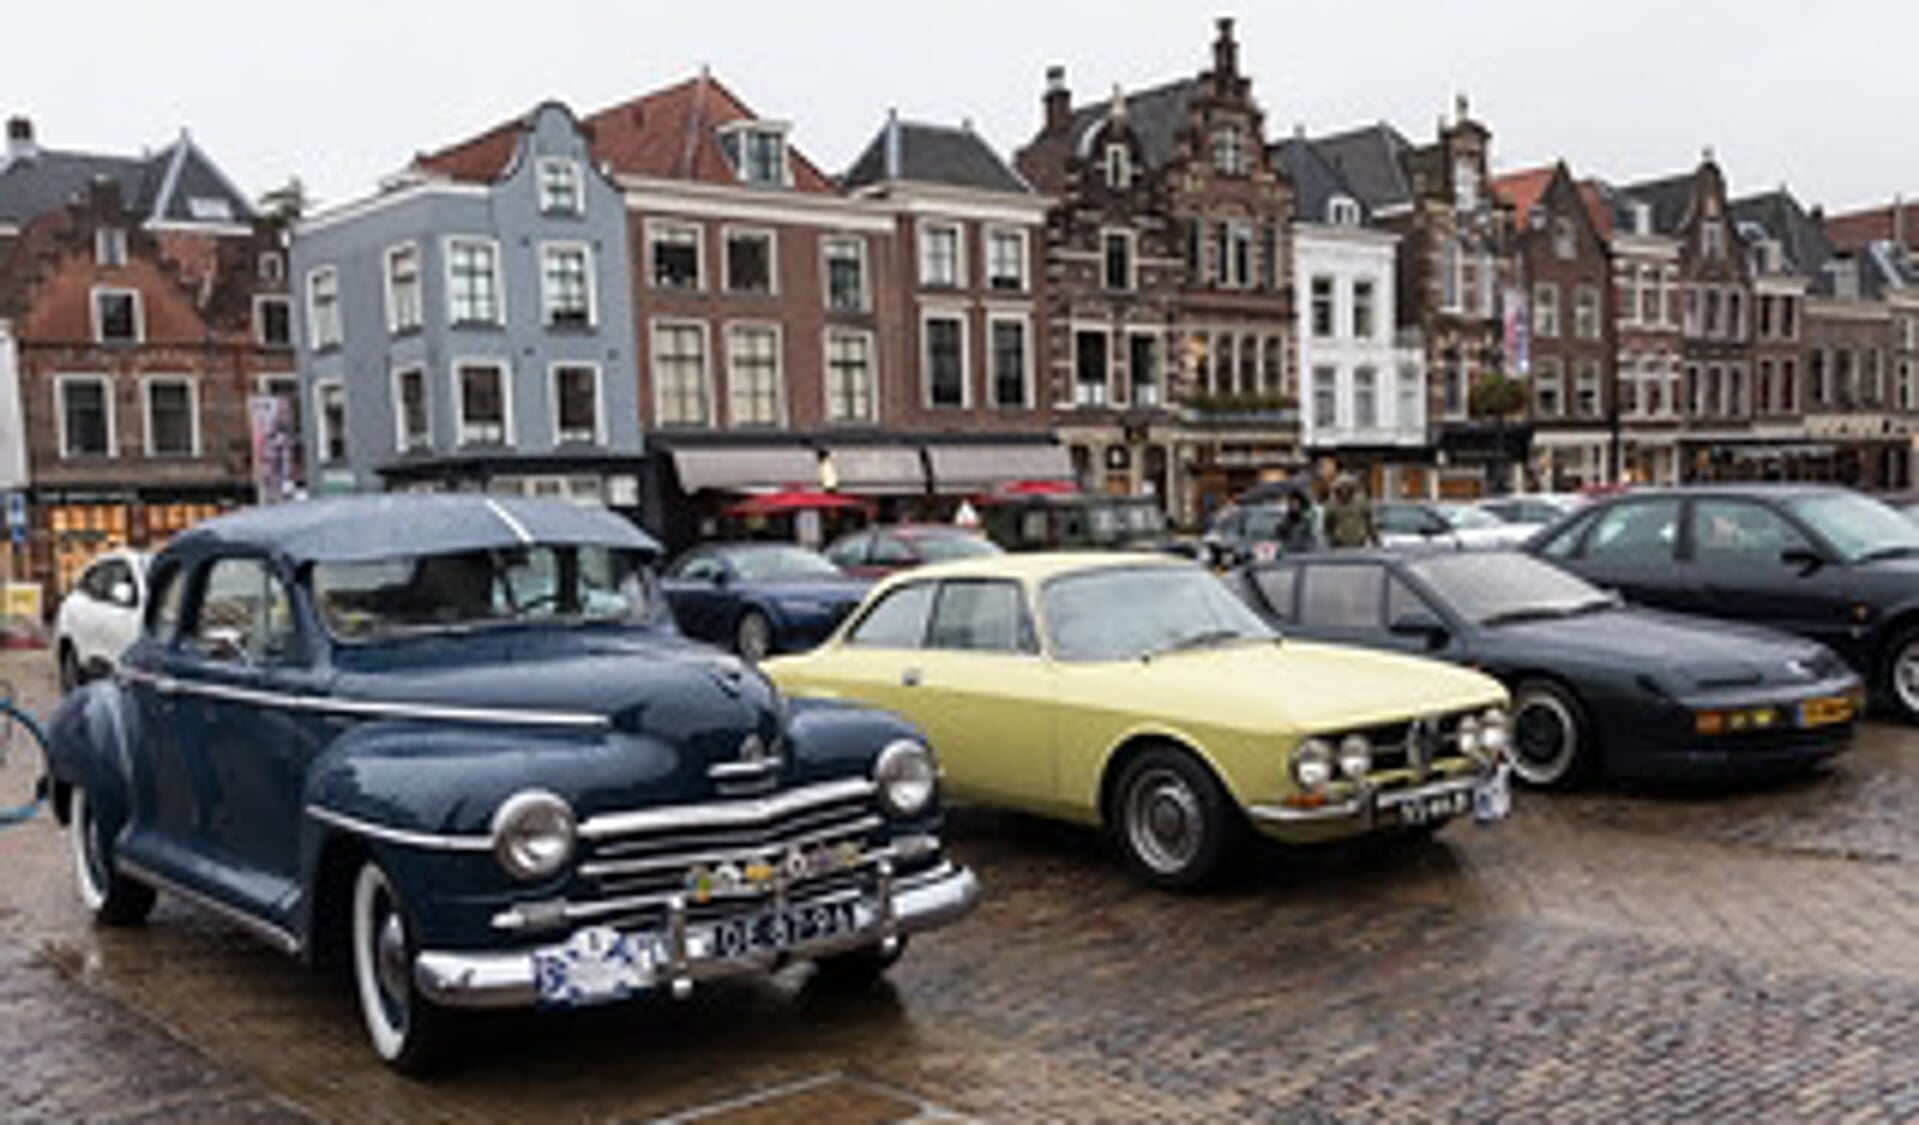 De aanblik van talloze oldtimers en klassiekers op de Markt in Delft, het eindpunt van de DelftsBlauwRit